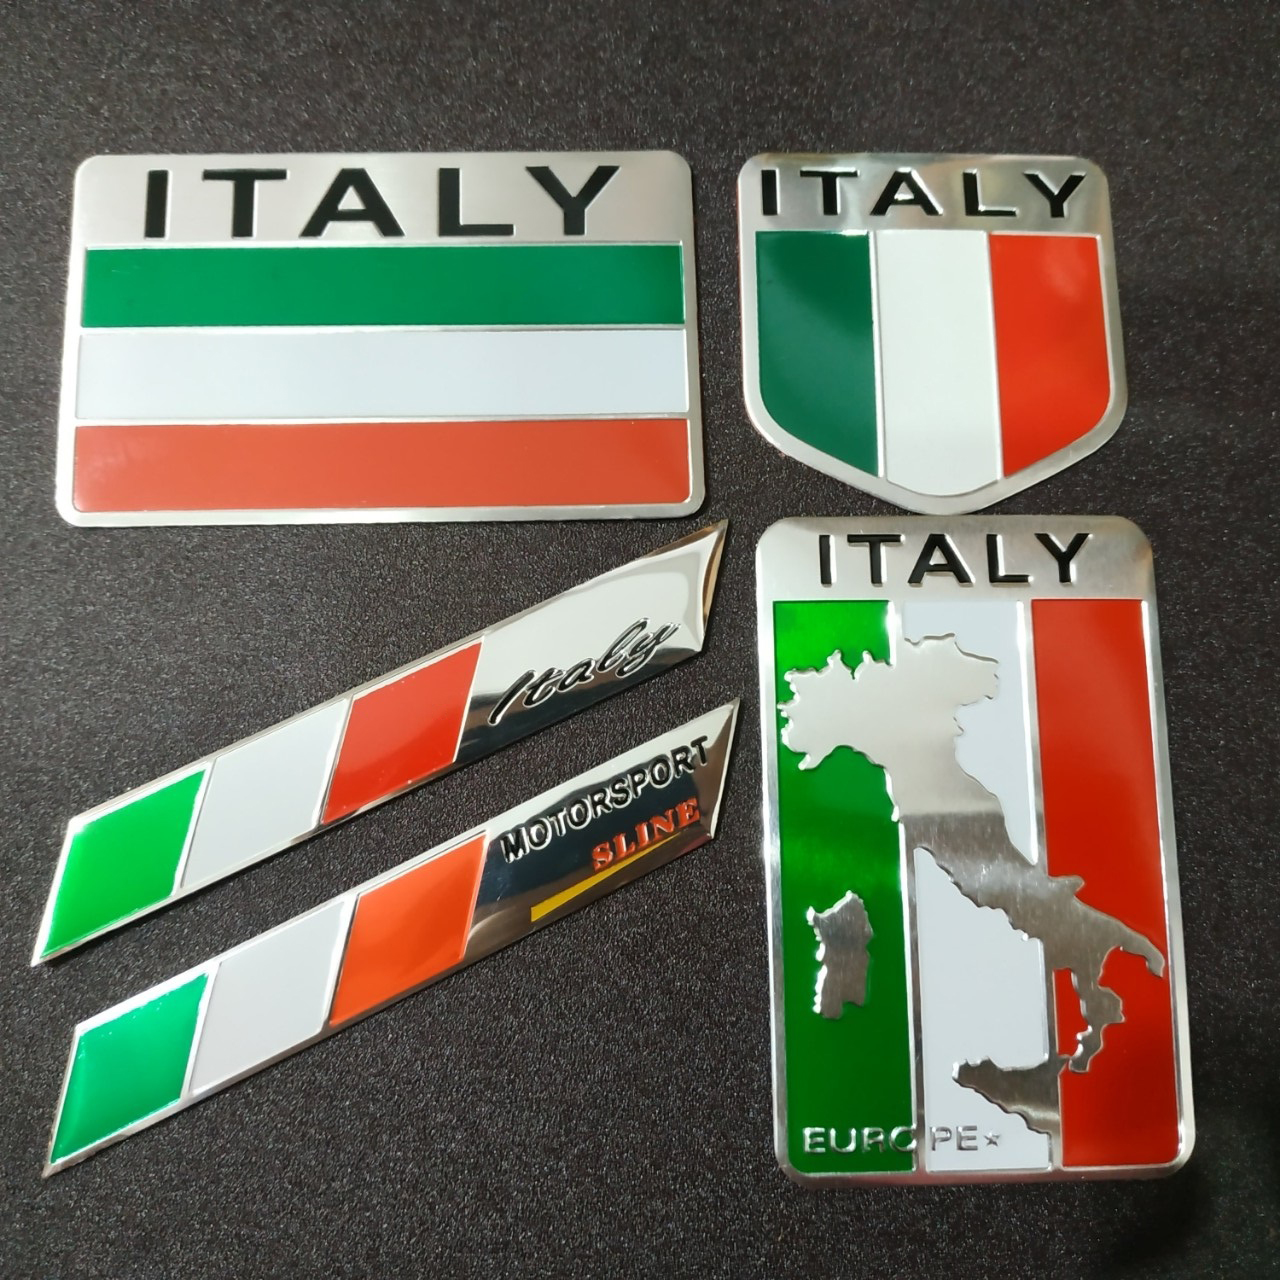 Những chiếc tem nhôm xe hình cờ Ý Italy giảm giá từ nhà sản xuất hàng đầu sẽ khiến bạn cảm thấy phấn khích. Đây là một cơ hội tuyệt vời để bạn trang trí xe của mình với những chiếc tem nhôm đẹp và ý nghĩa. Hãy cùng chúng tôi tìm hiểu thông tin chi tiết về sản phẩm trong hình ảnh.